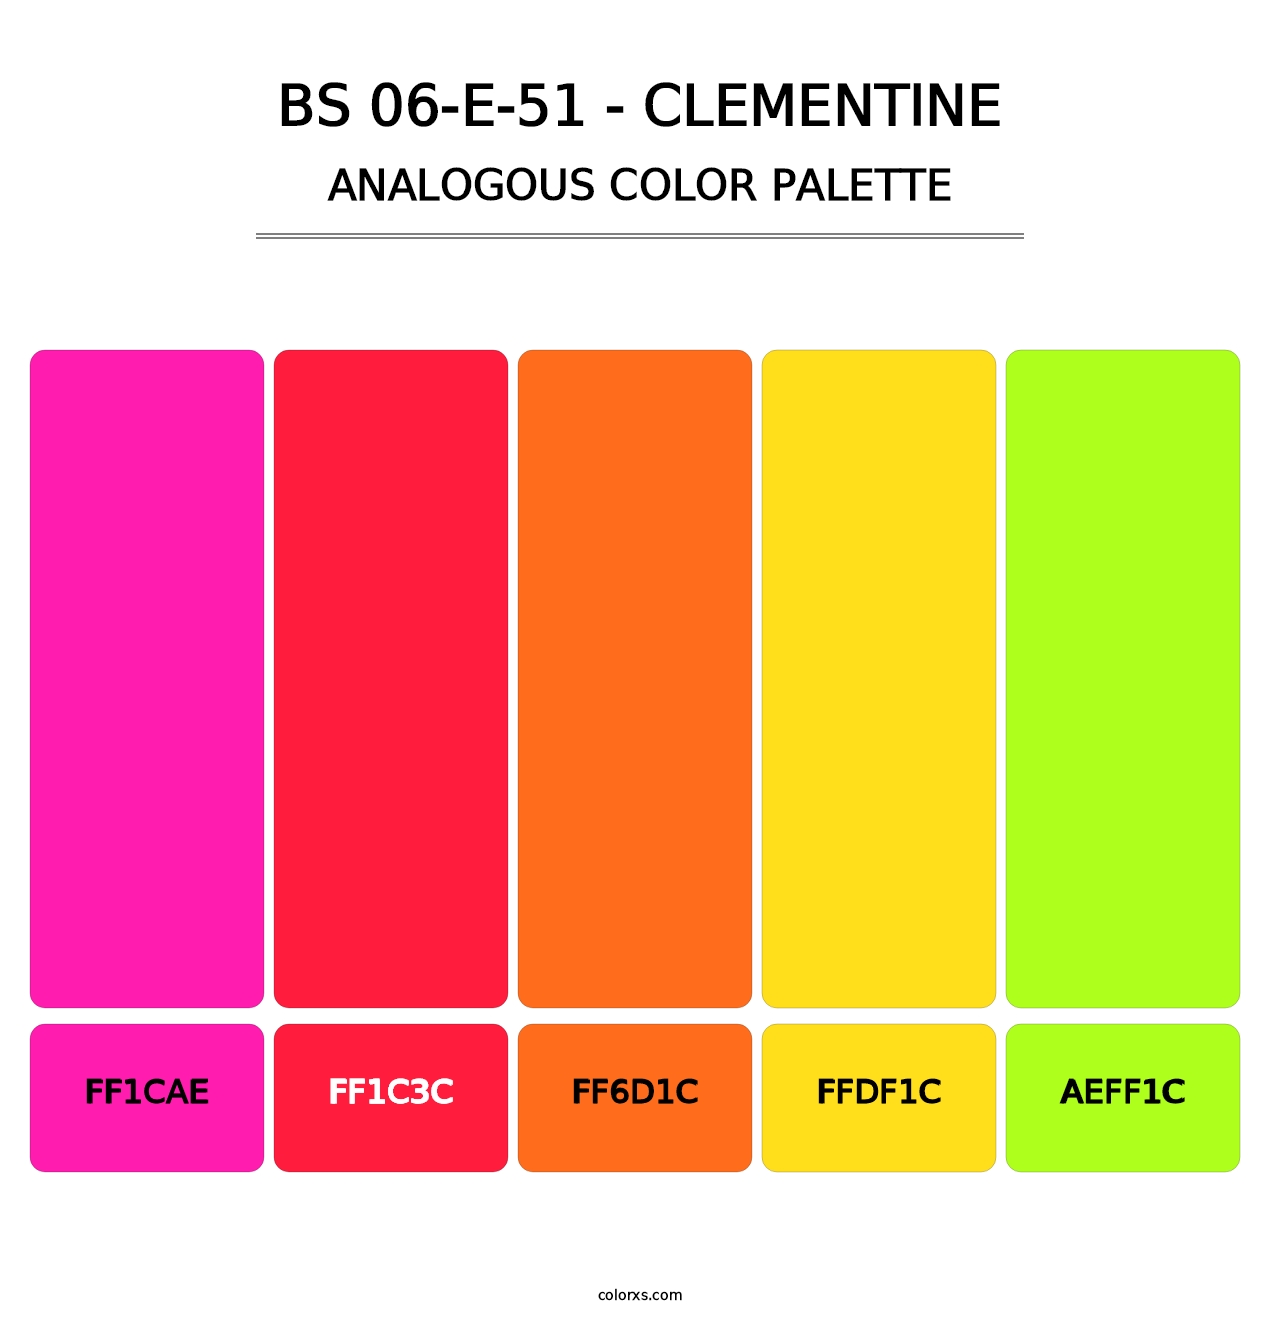 BS 06-E-51 - Clementine - Analogous Color Palette